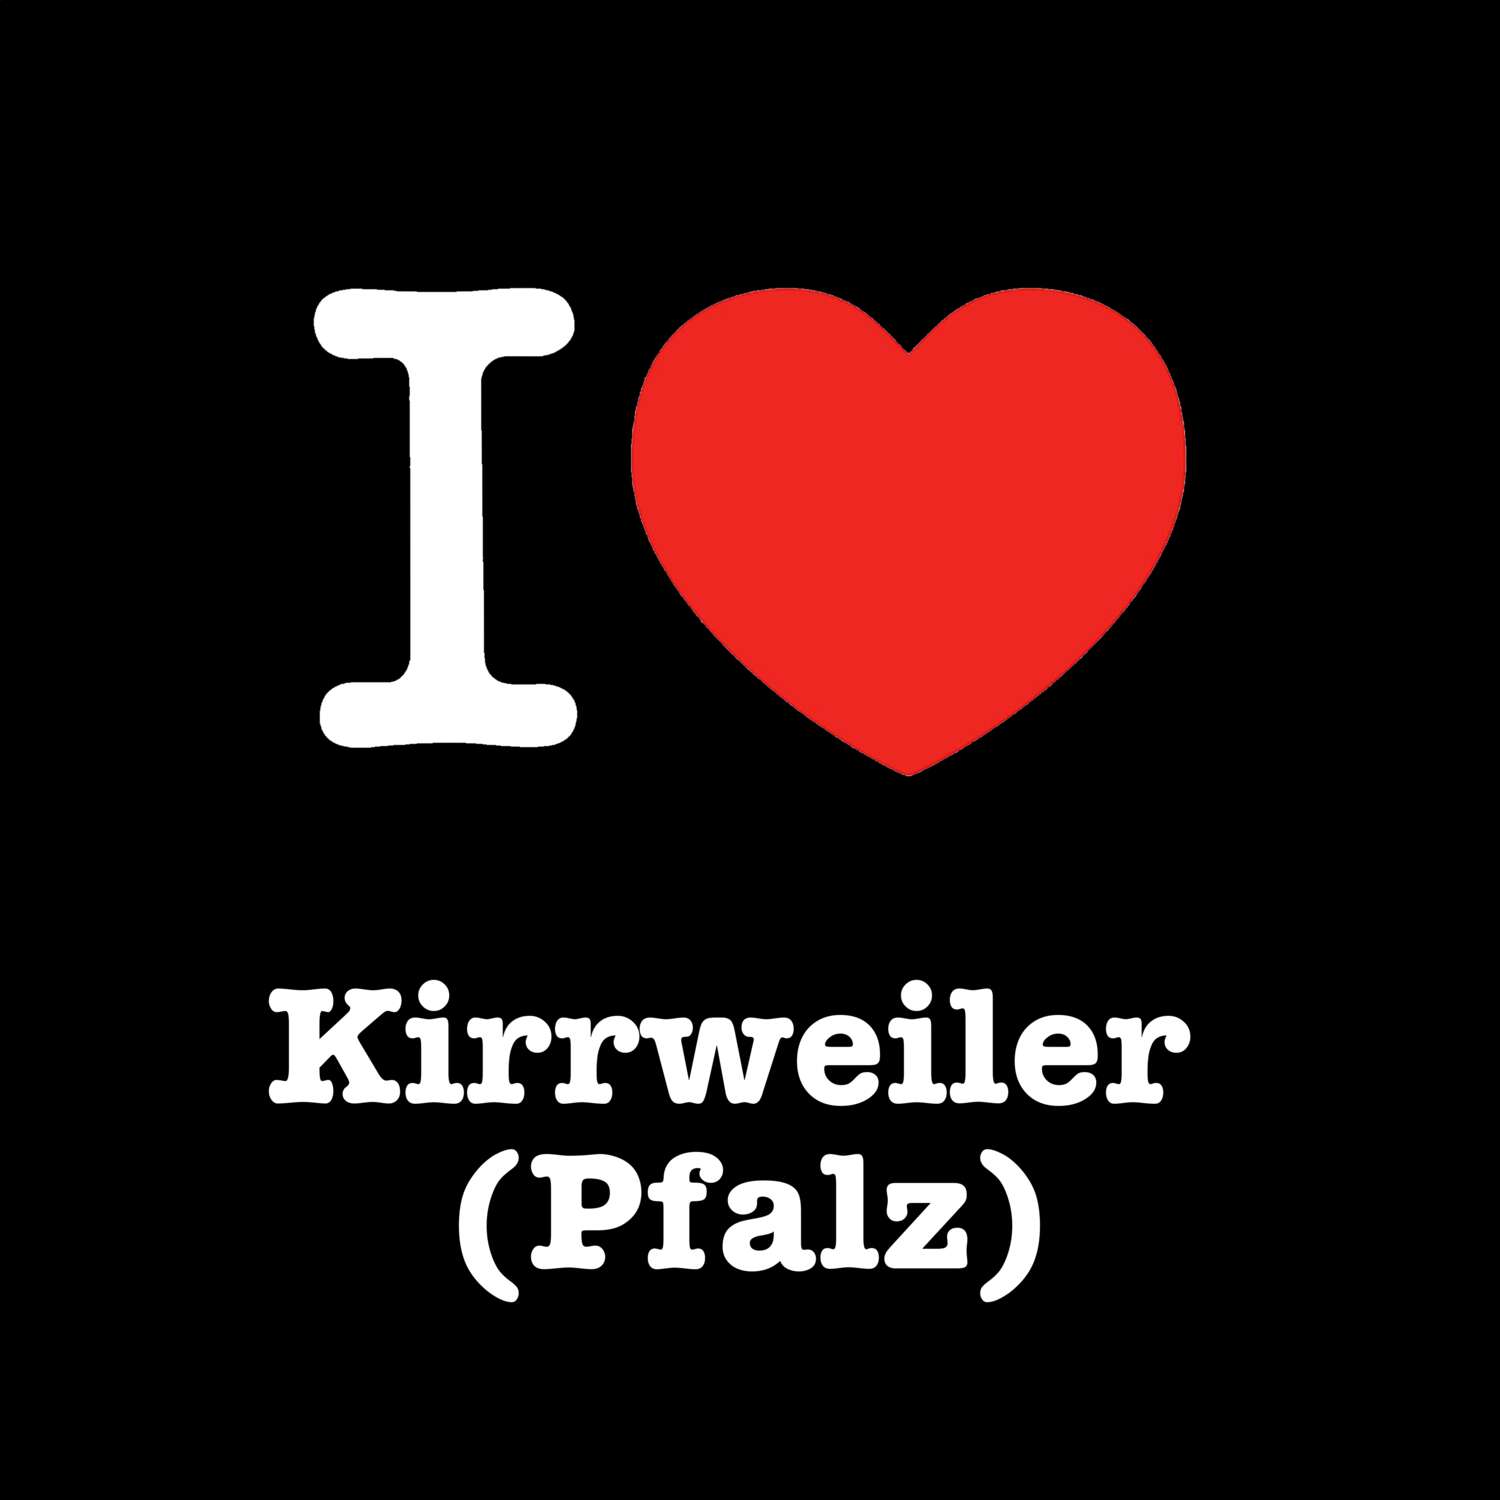 Kirrweiler (Pfalz) T-Shirt »I love«